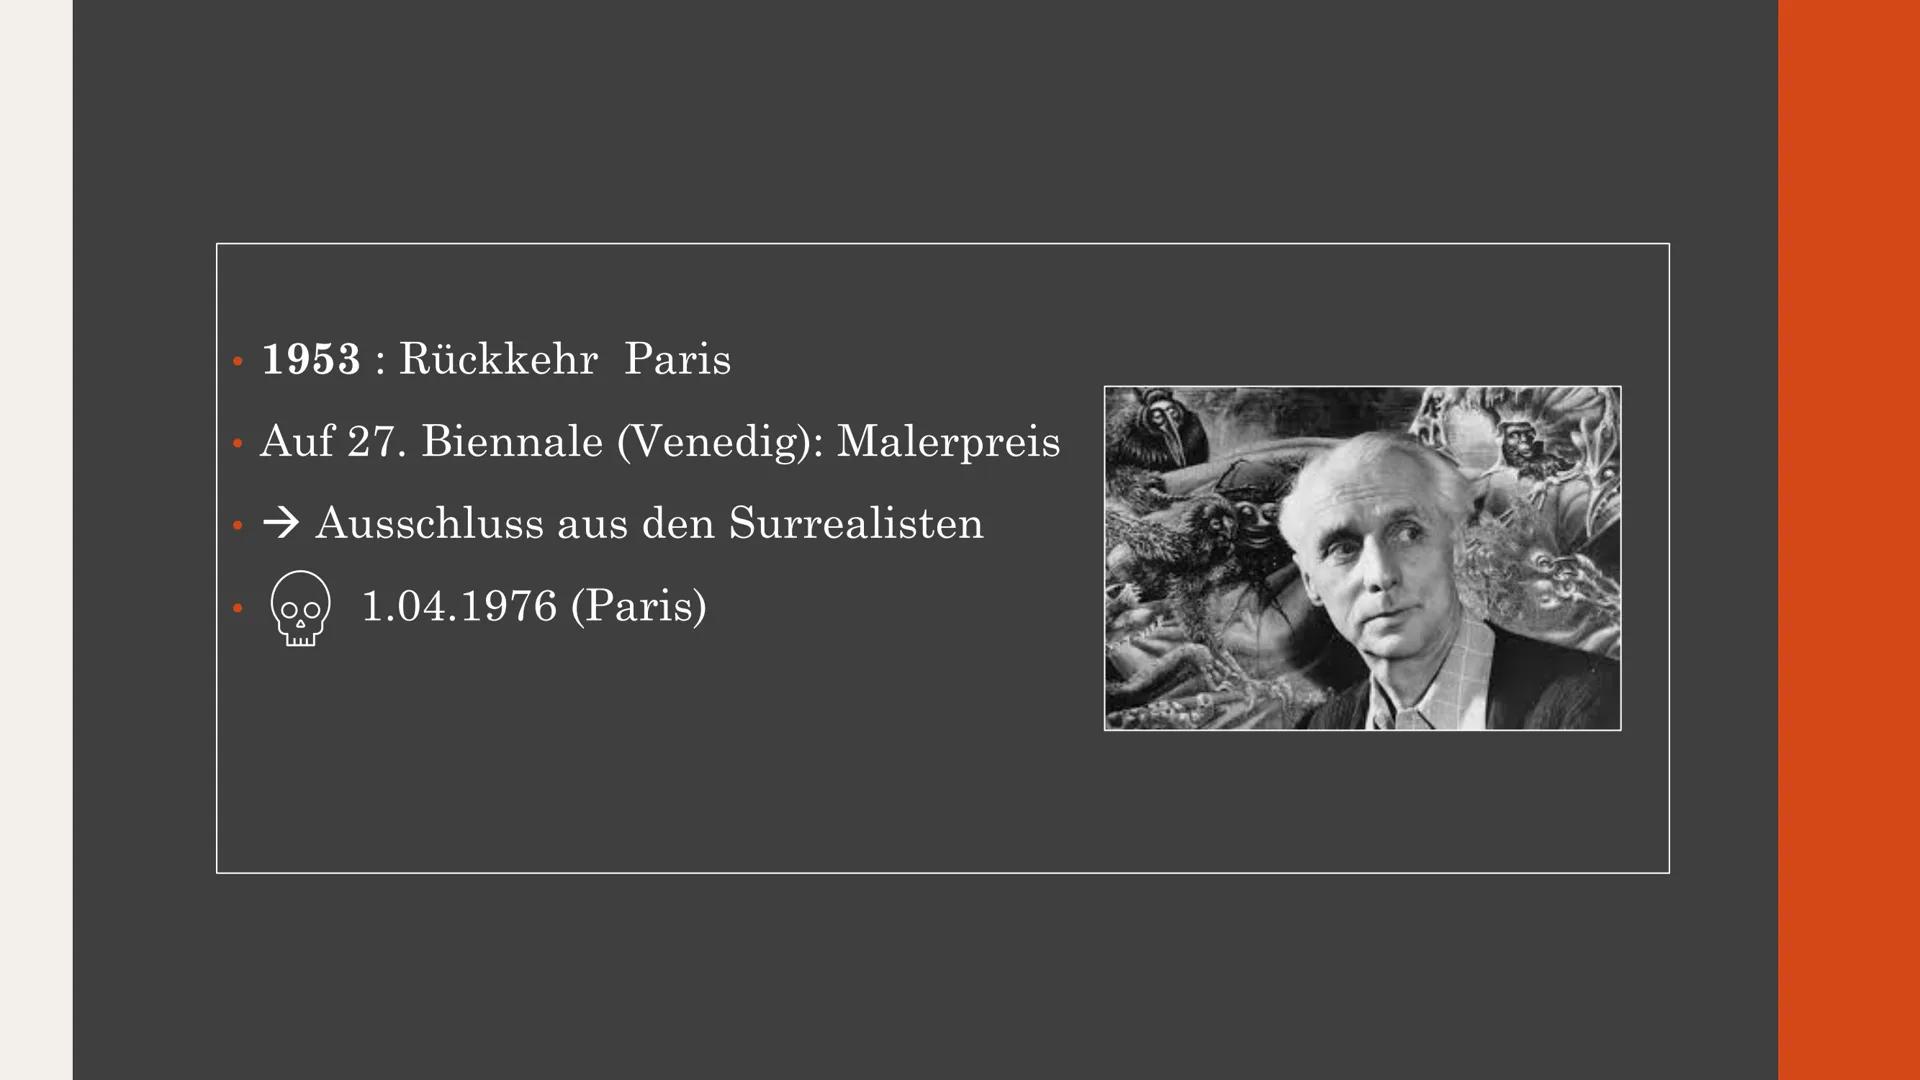 Max Ernst
und
seine Kunst
Von Amelie und Liv
Q2 Kunst GK - Frau Lainck Inhalt
1. Kurzbiografie Max Ernst
2. Kunstwerke
3.
2.1
• 2.2
●
• 2.3
